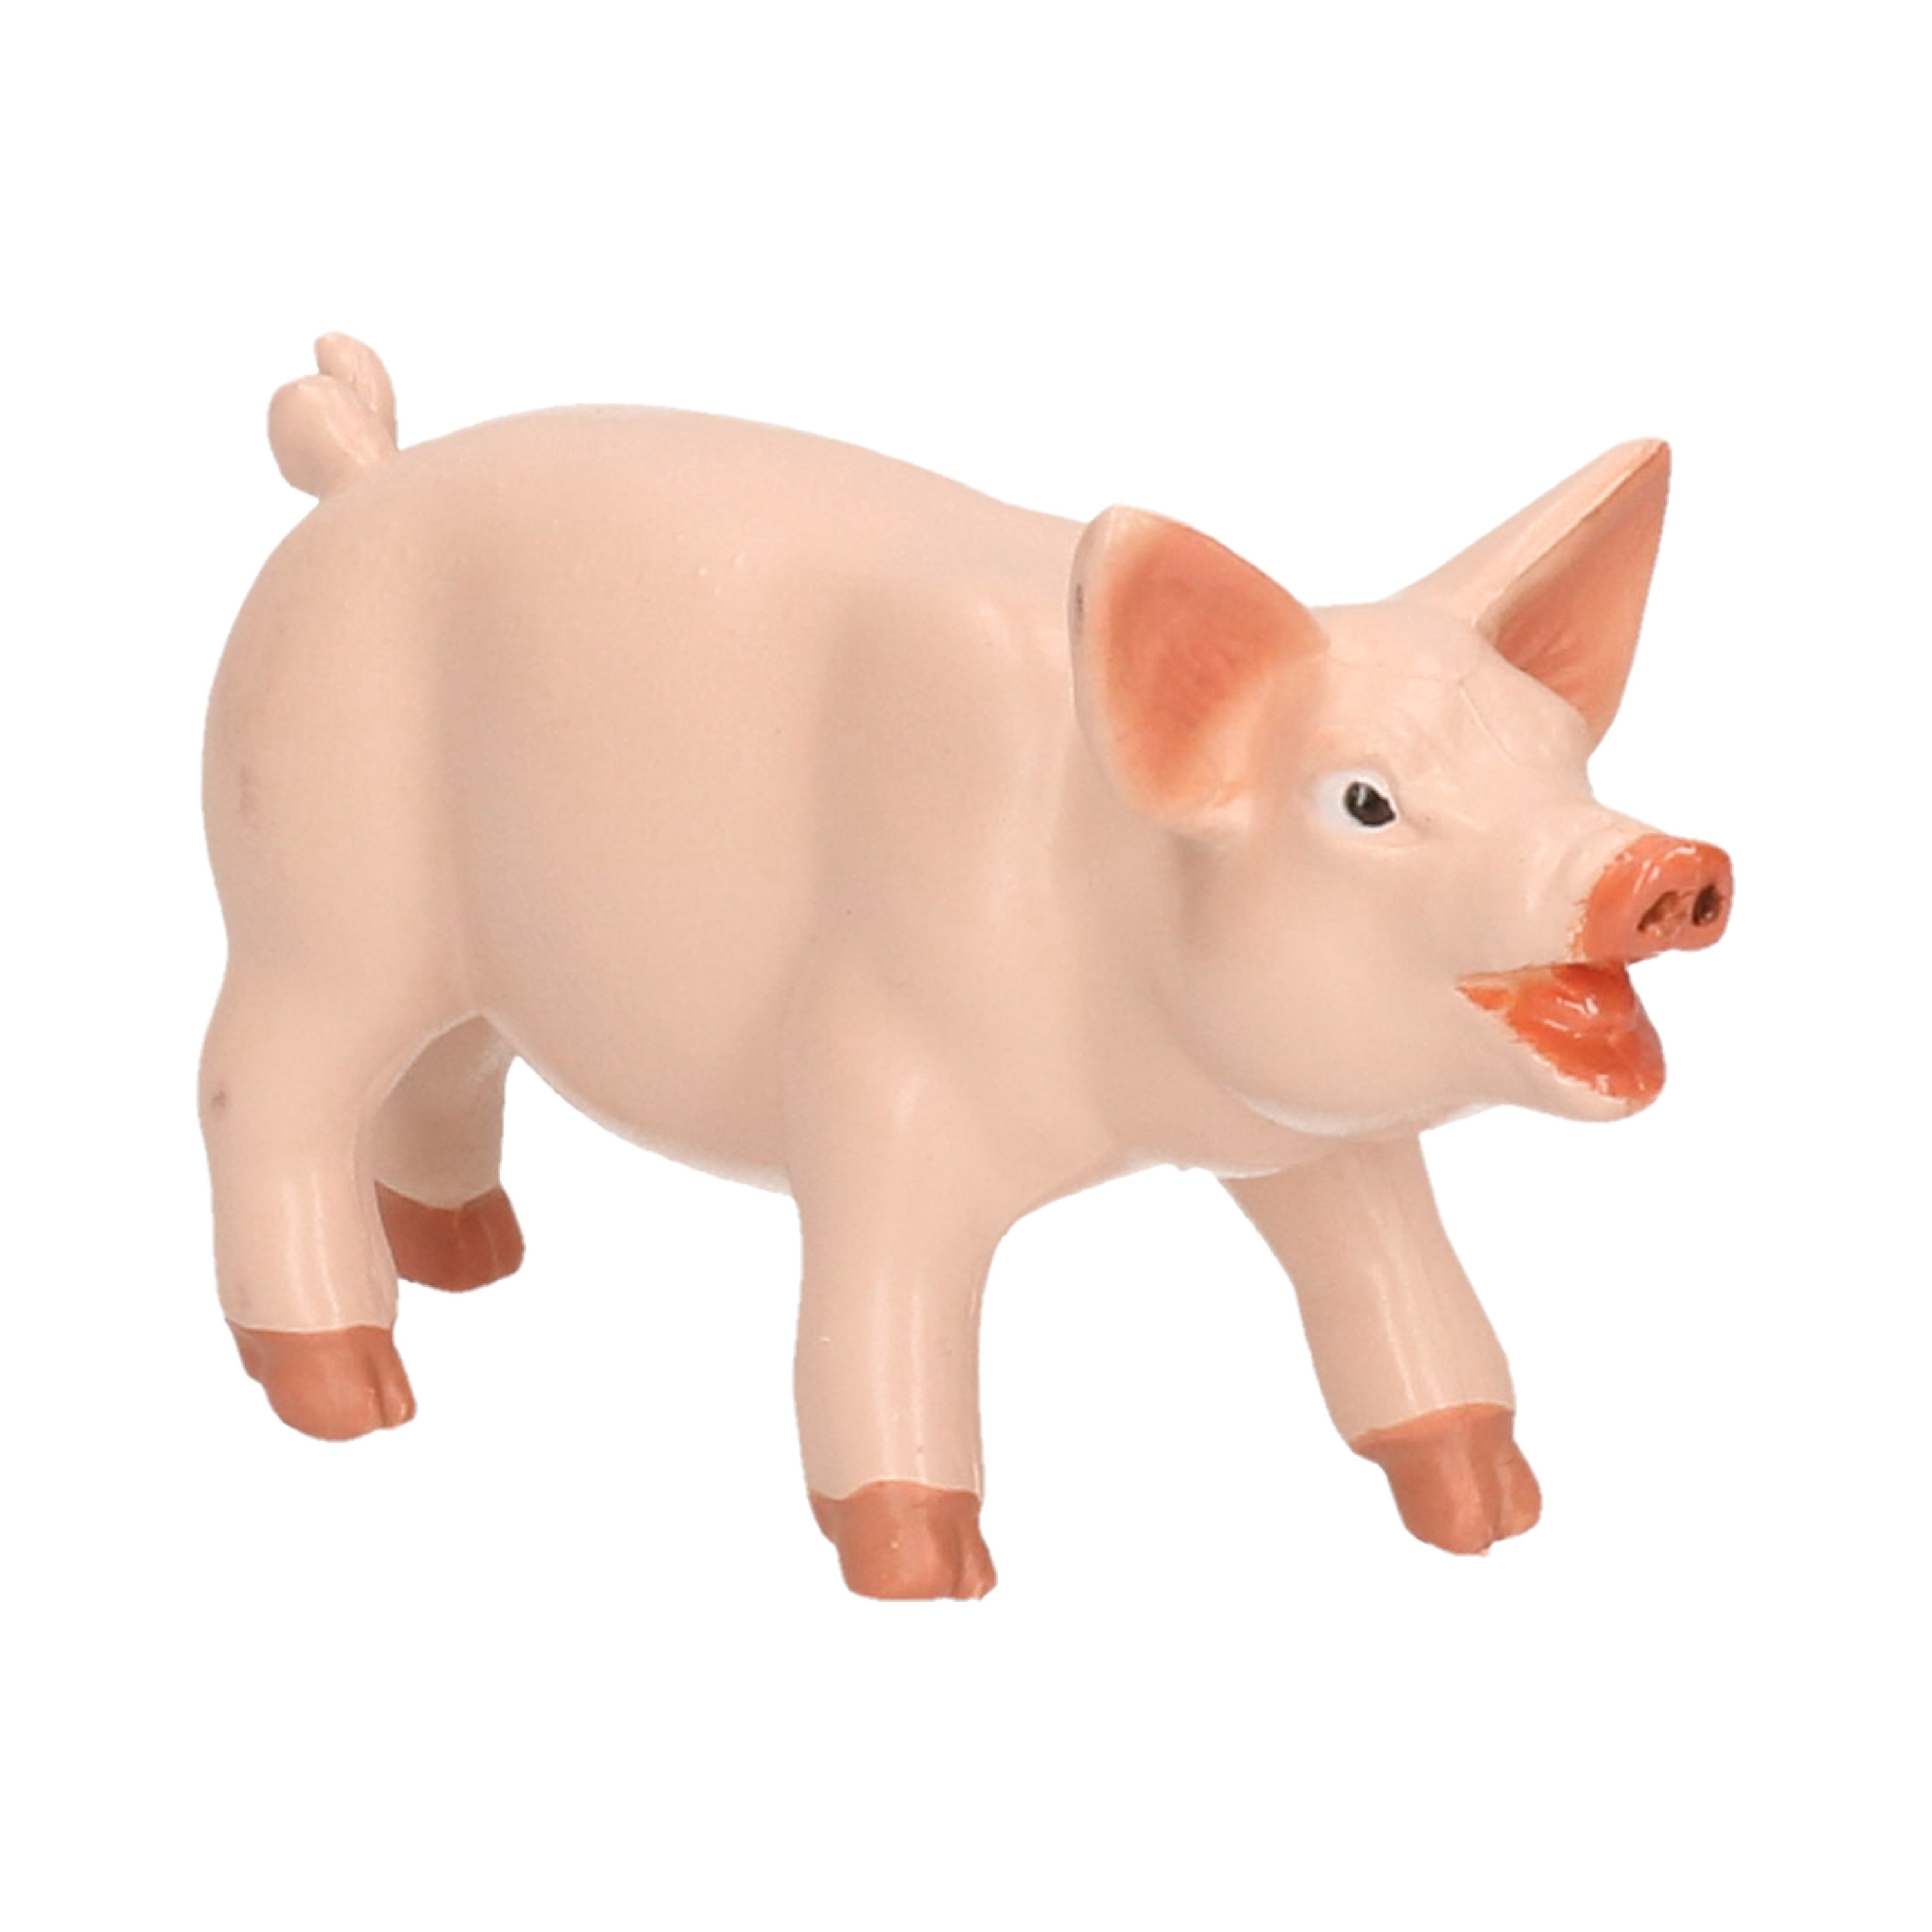 Plastic speelgoed figuur varken/big 6 cm